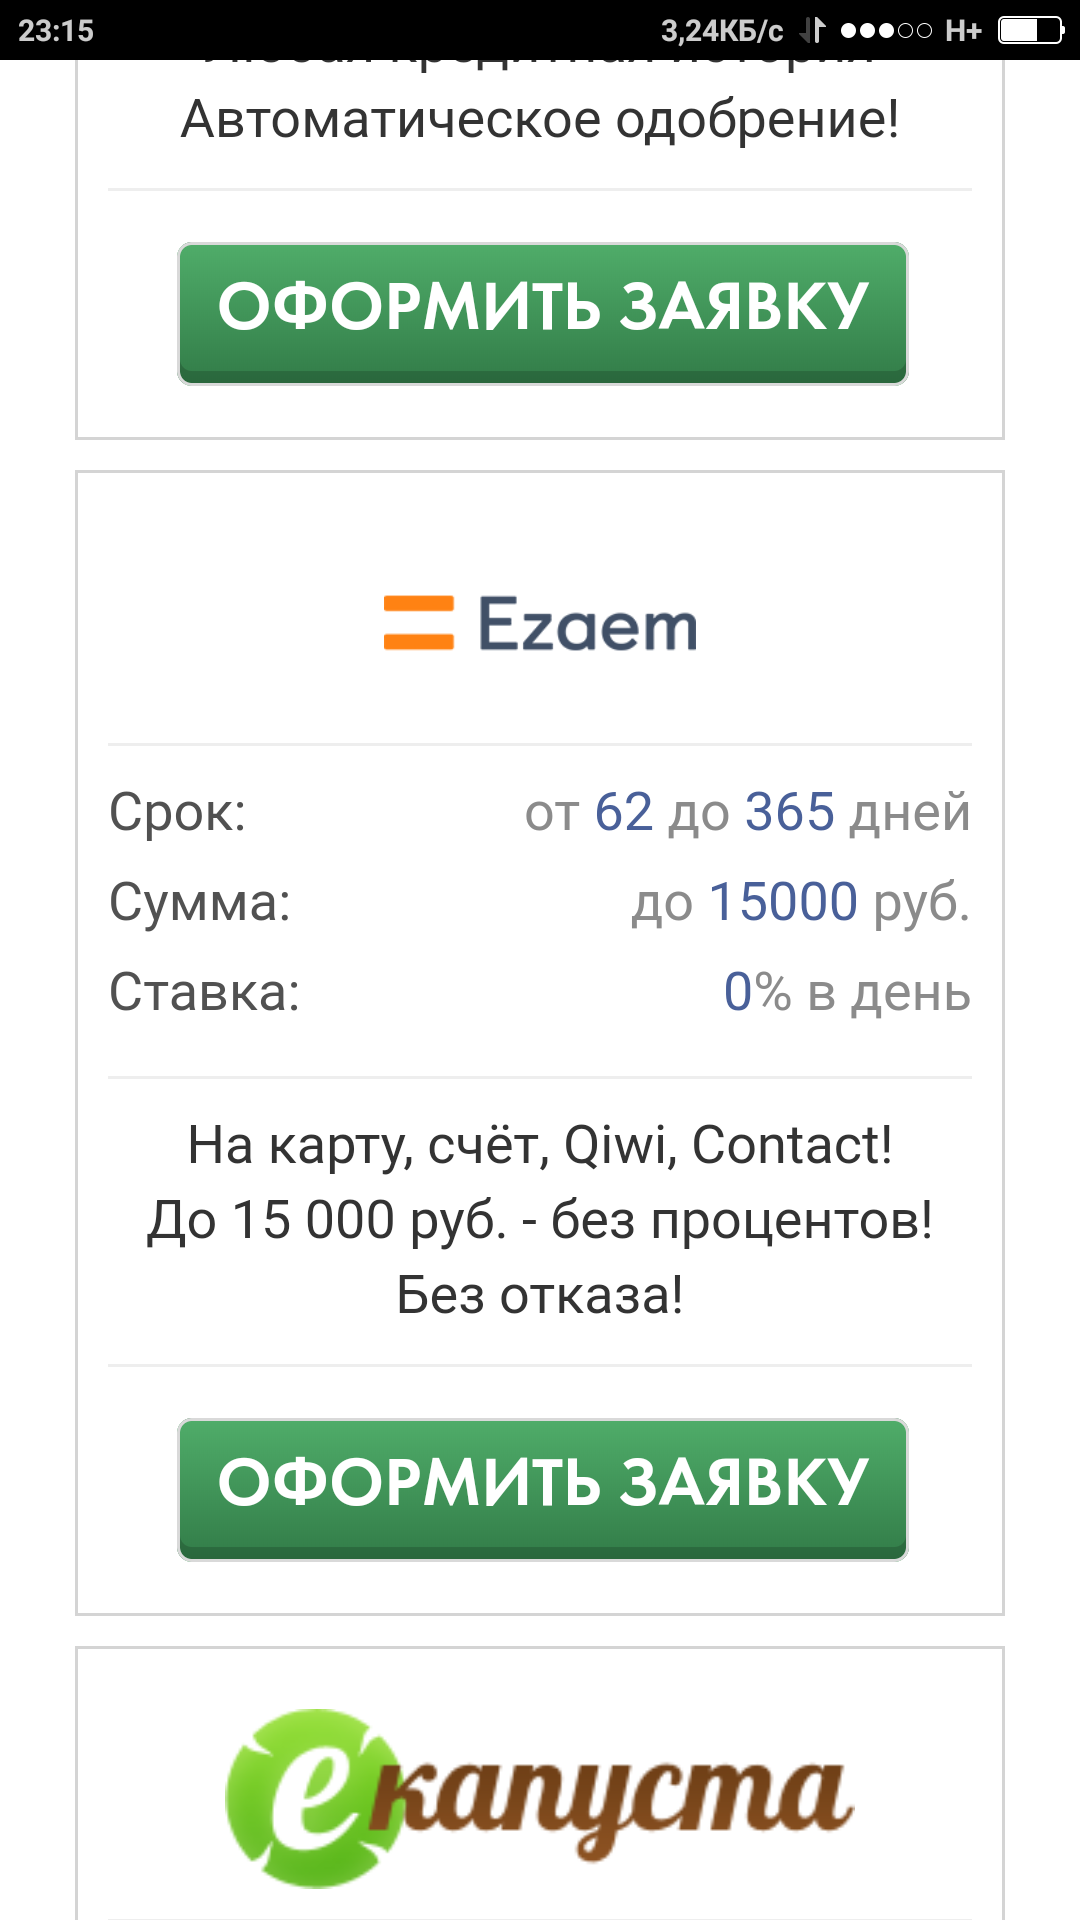 Гибдд москва официальный сайт адрес телефон